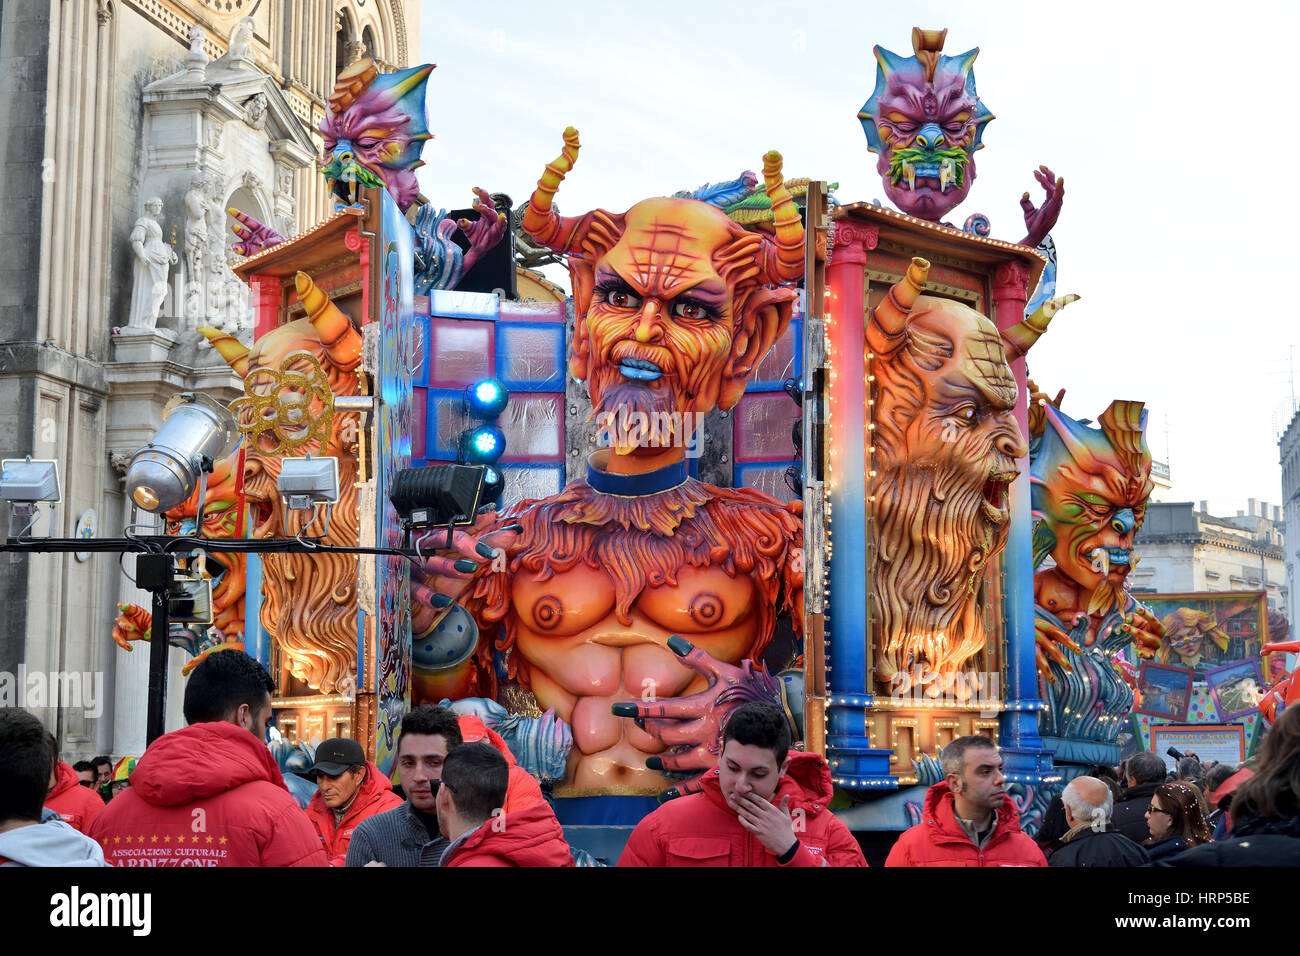 Acireale (CT), Italia - 28 Febbraio 2017: Dettaglio di un galleggiante allegorico raffigurante una grande diavolo rosso in una nicchia, durante la sfilata di carnevale Foto Stock